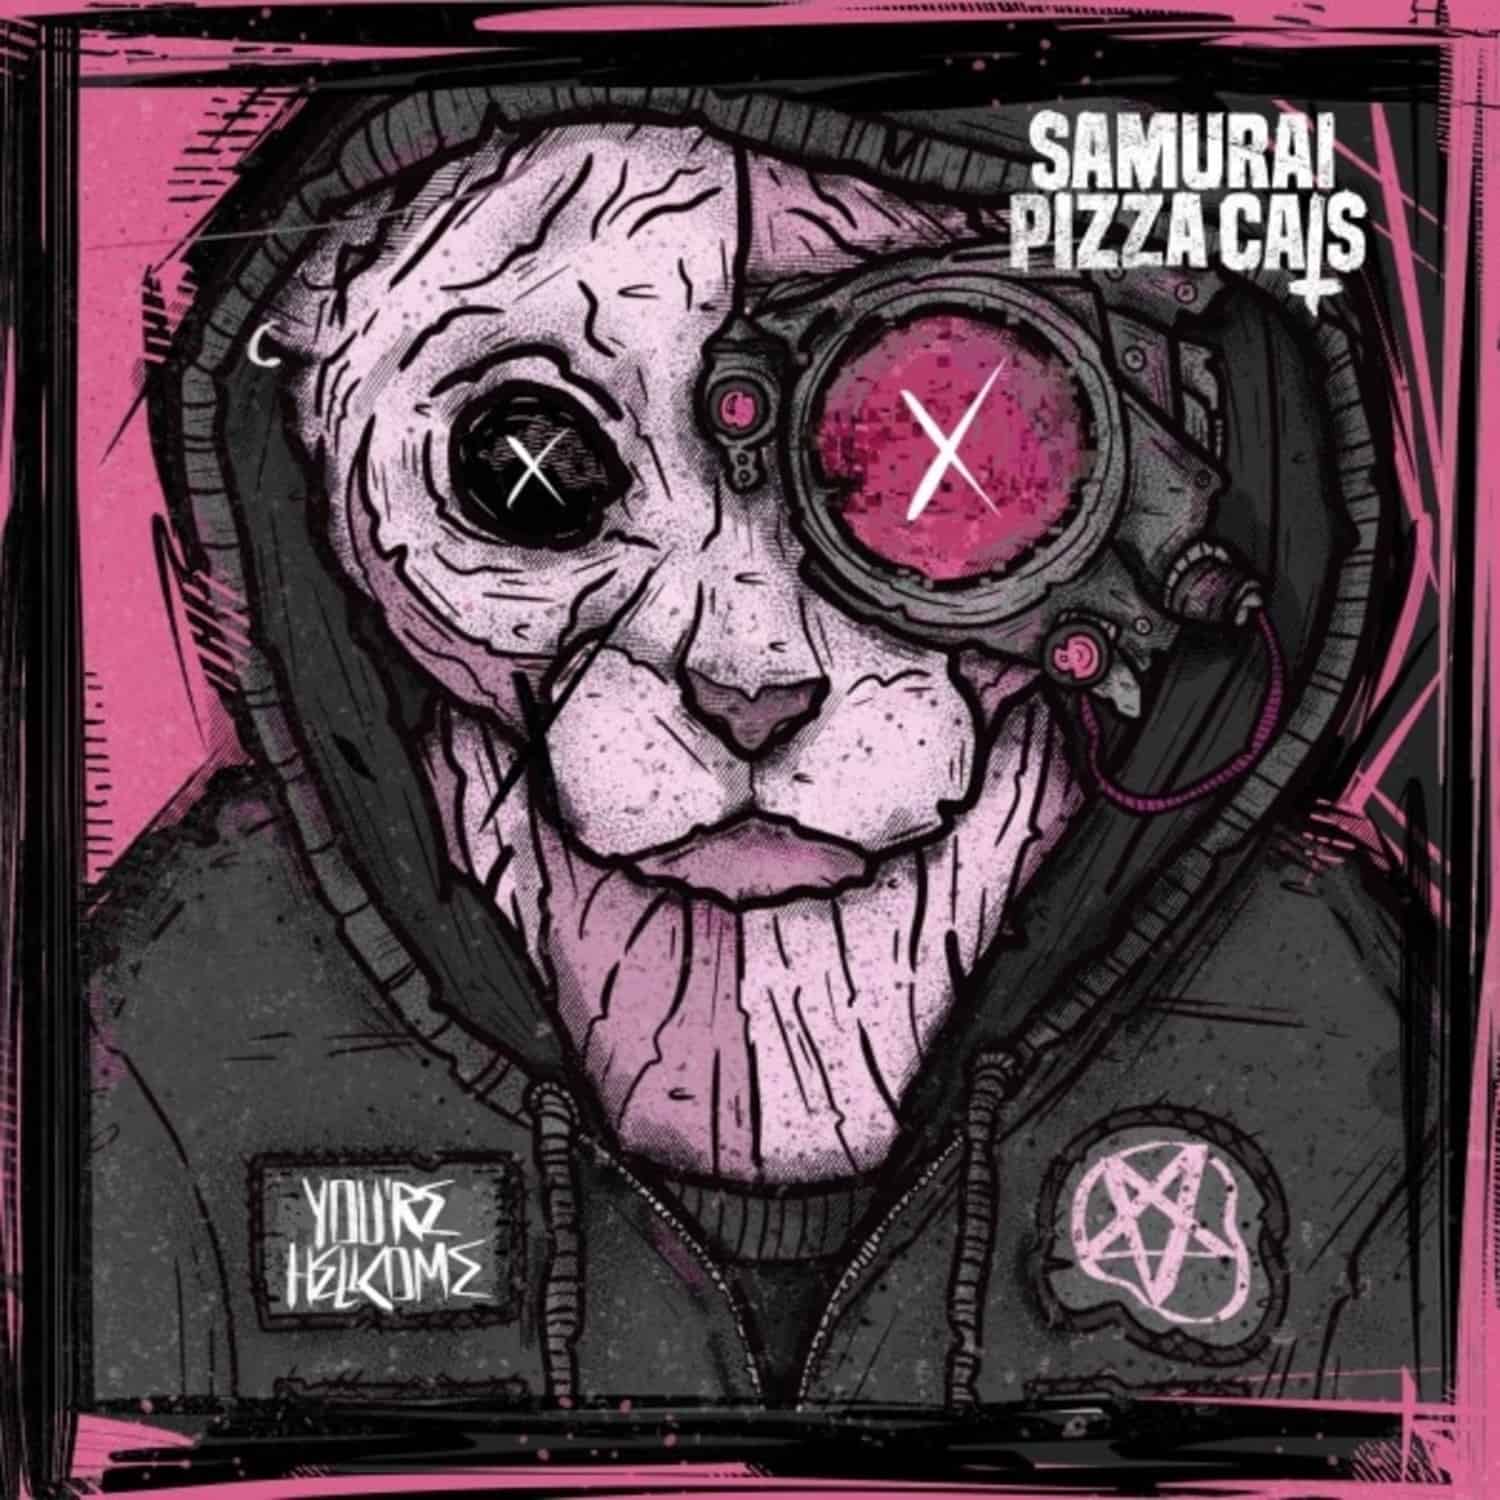 Samurai Pizza Cats - YOU RE HELLCOME 